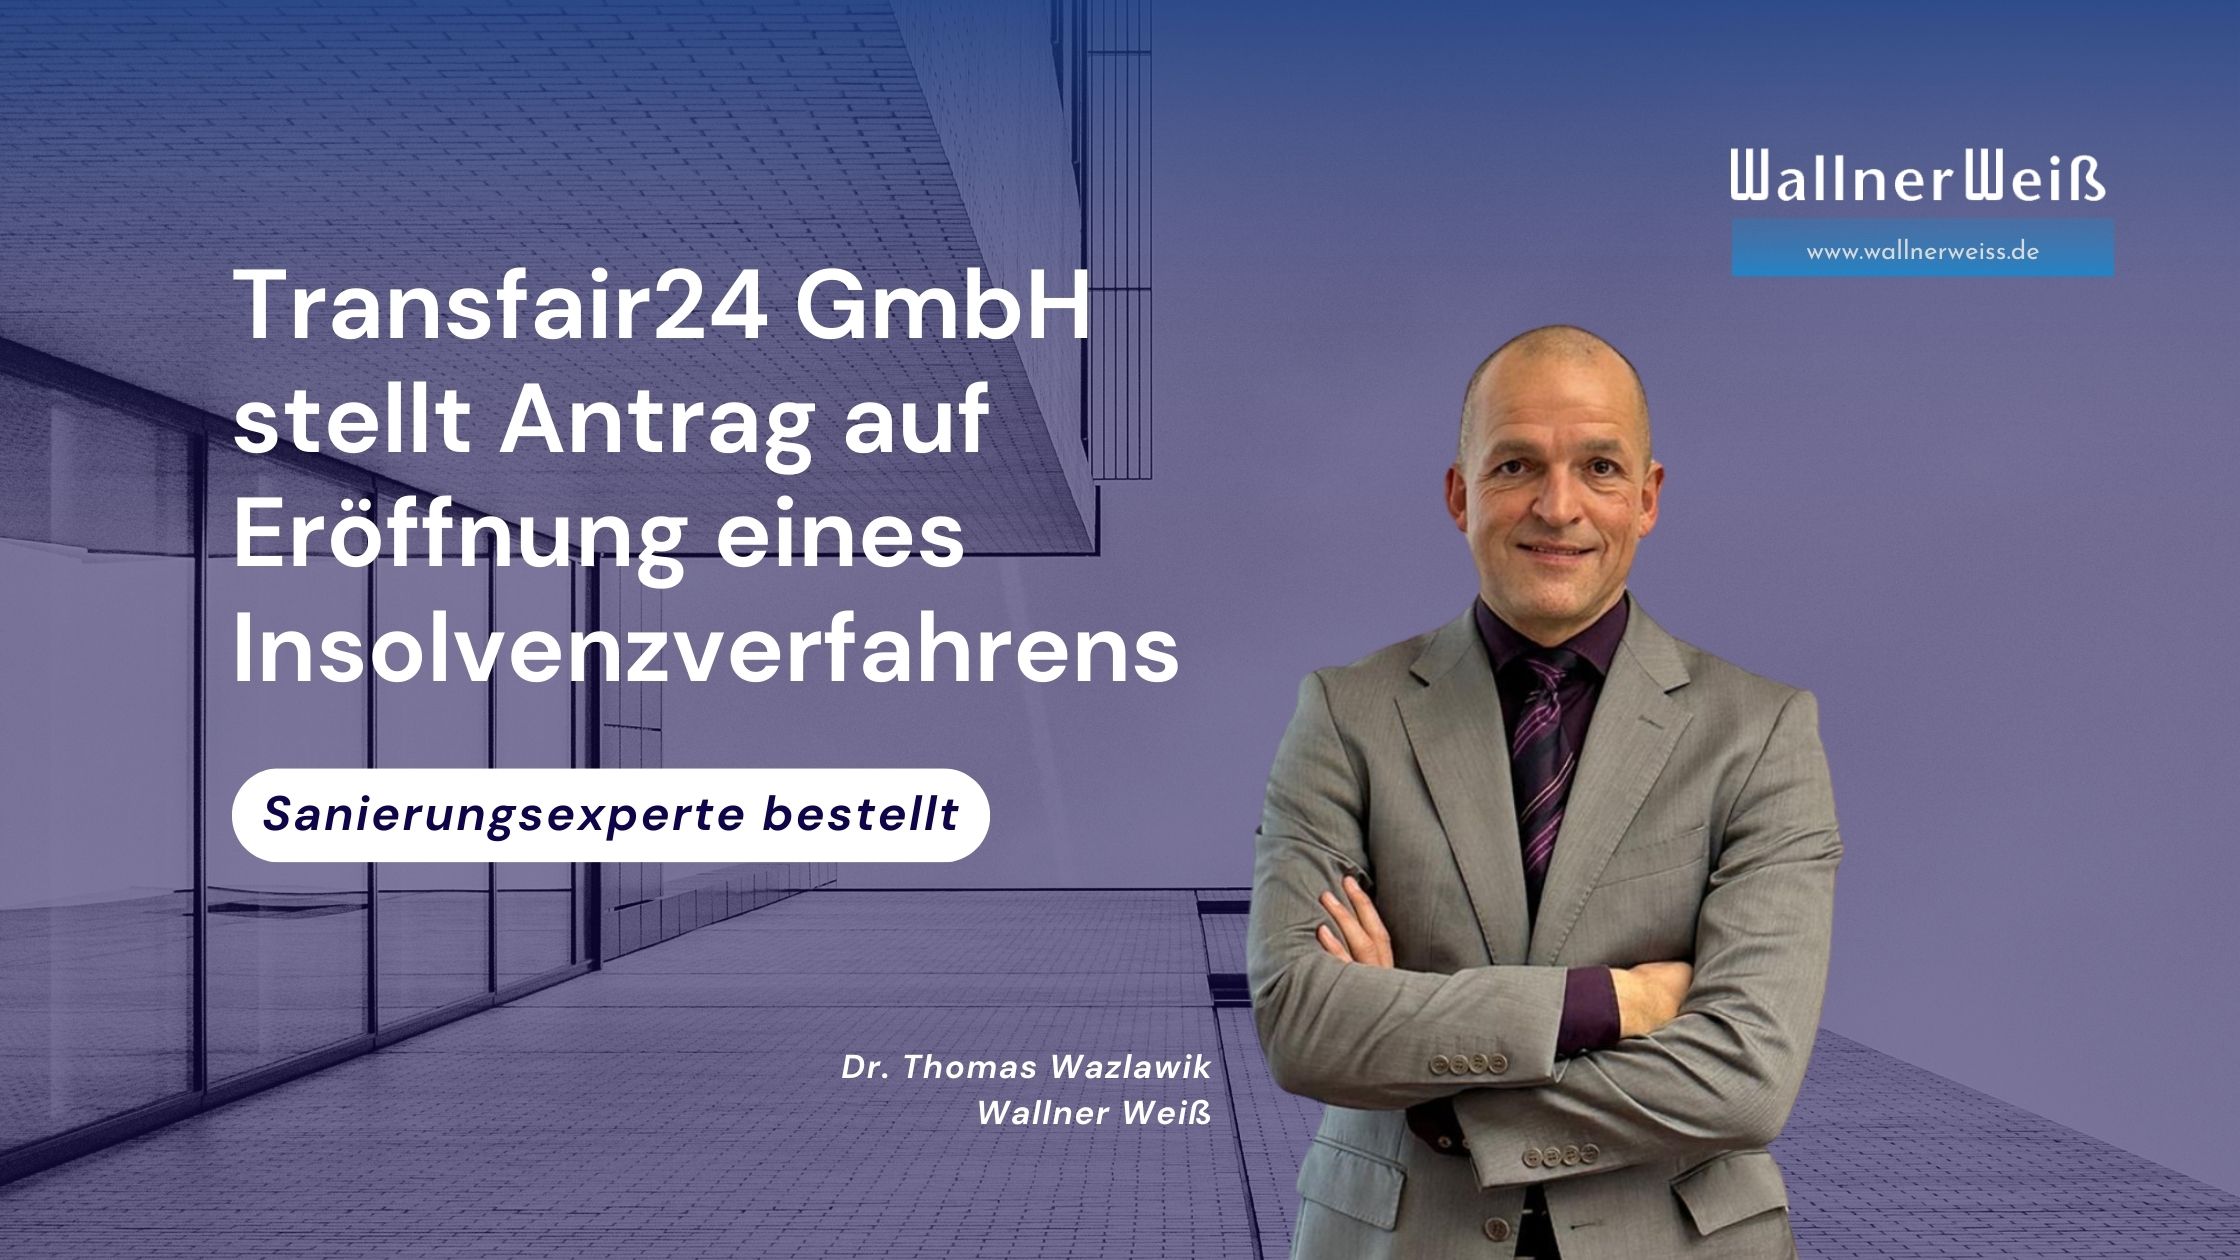 Transfair24 GmbH stellt Antrag auf Eröffnung eines Insolvenzverfahrens